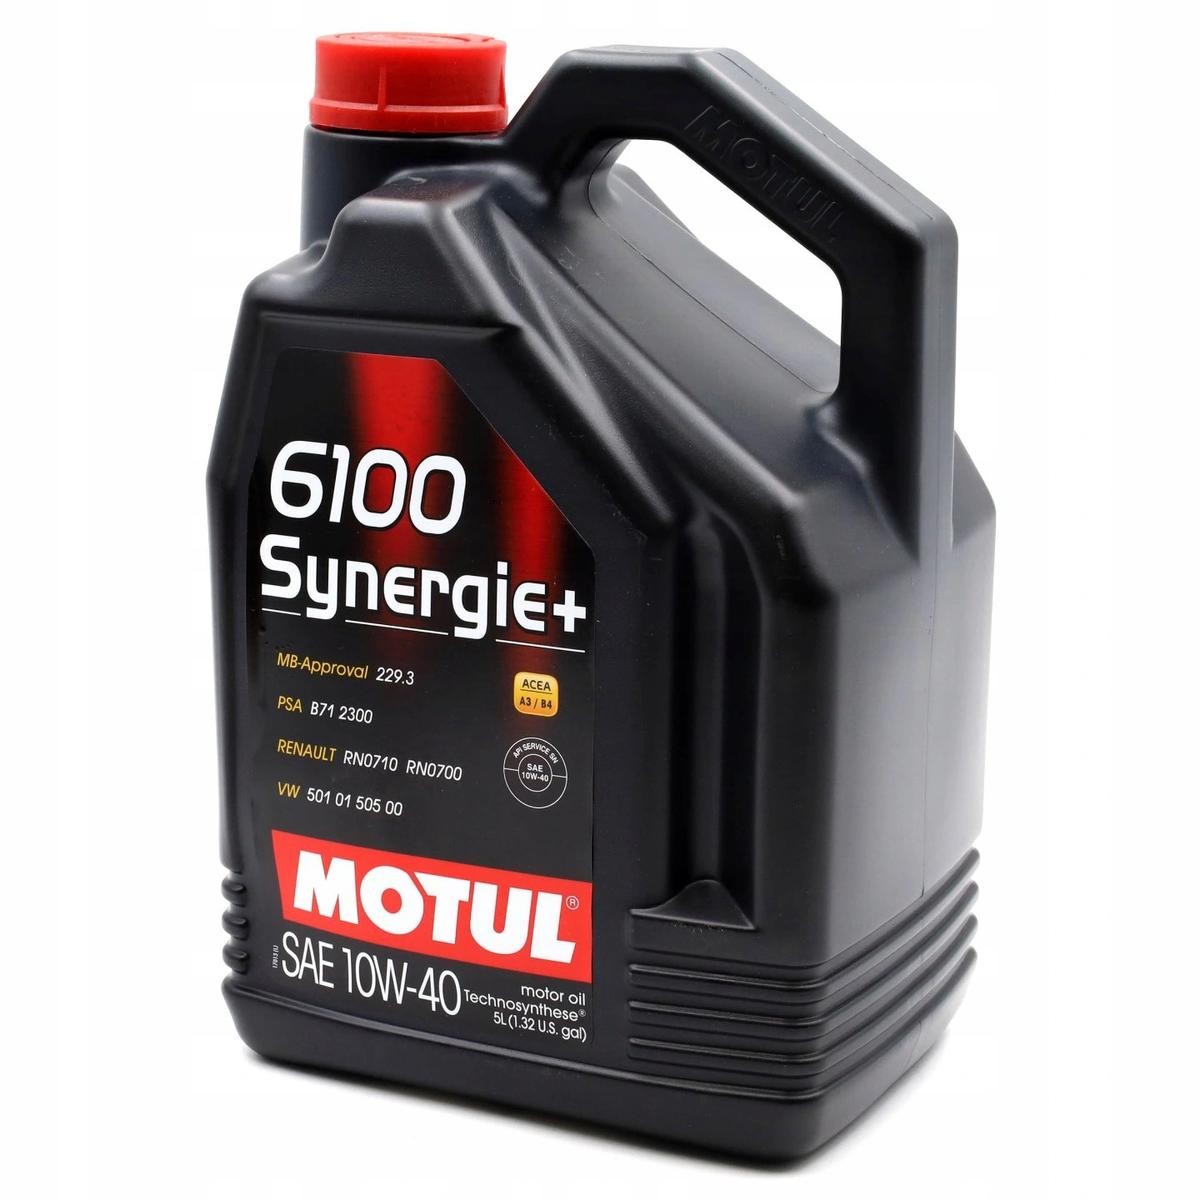 Honda Motoröl MOTUL 16100 zum günstigen Preis